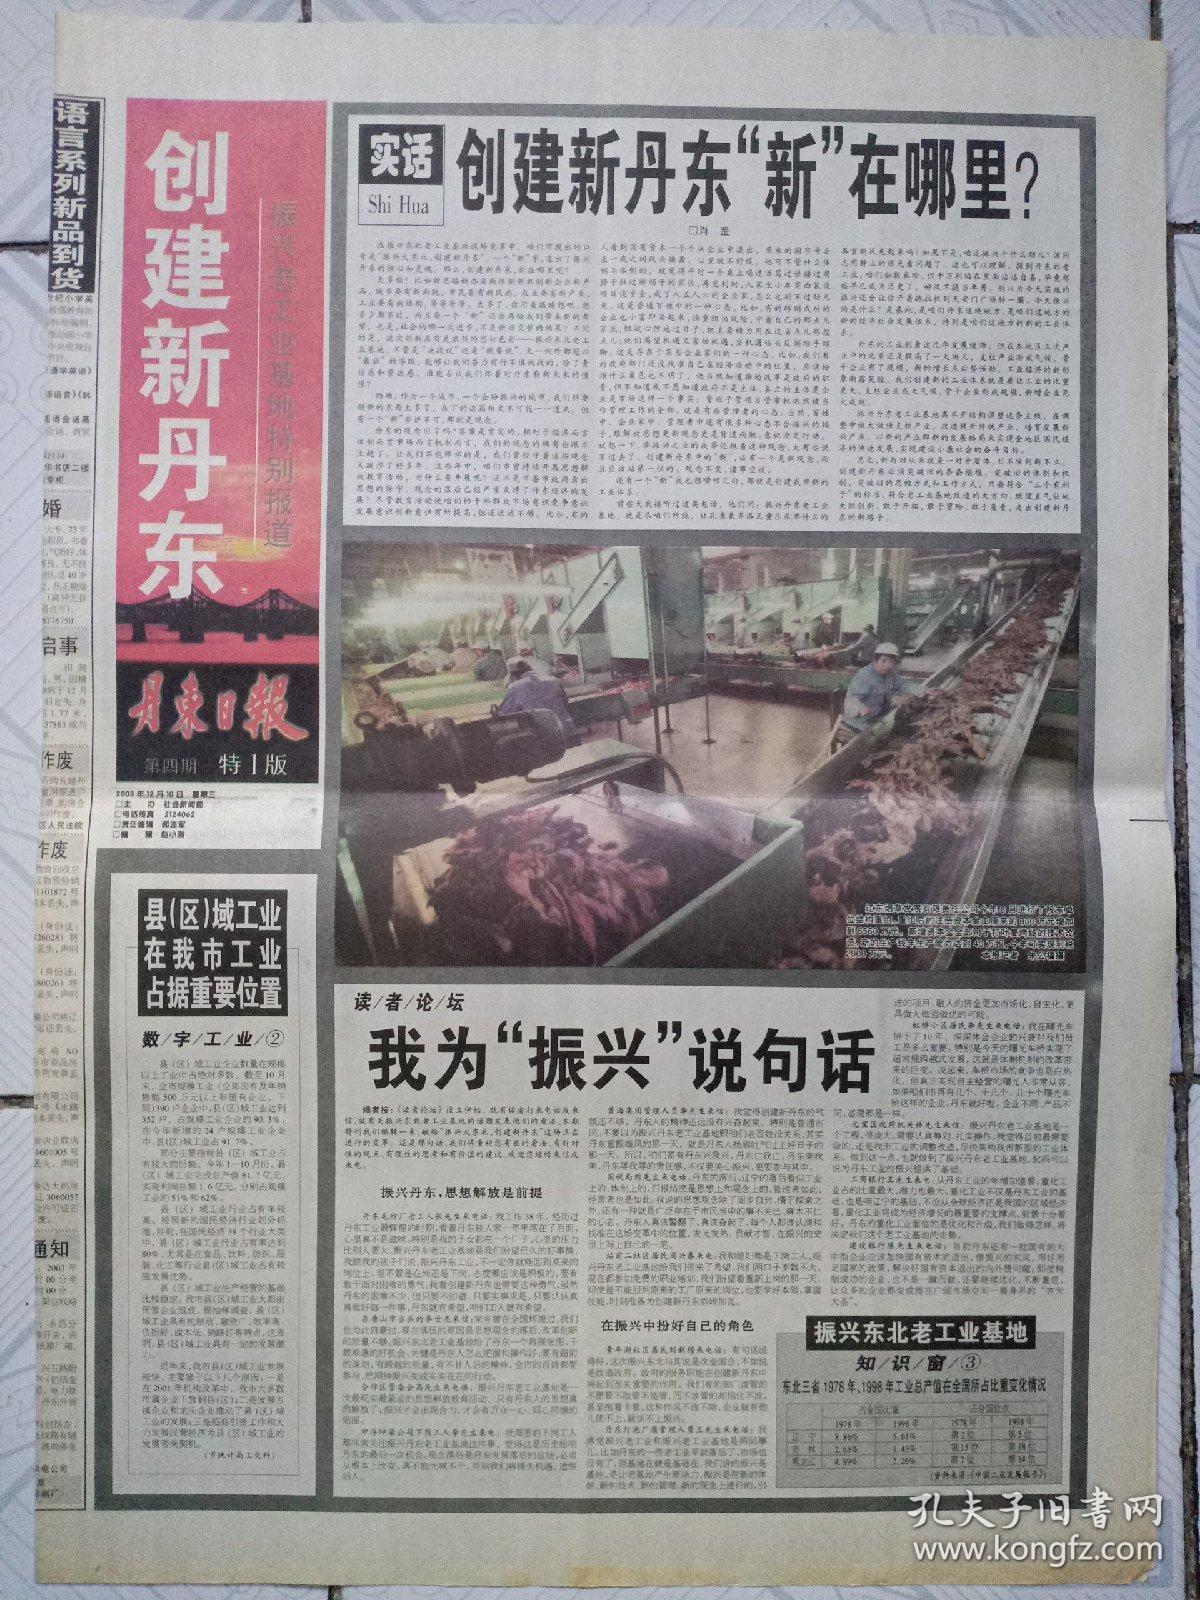 丹东日报(2003年12月10日)创建新丹东第四